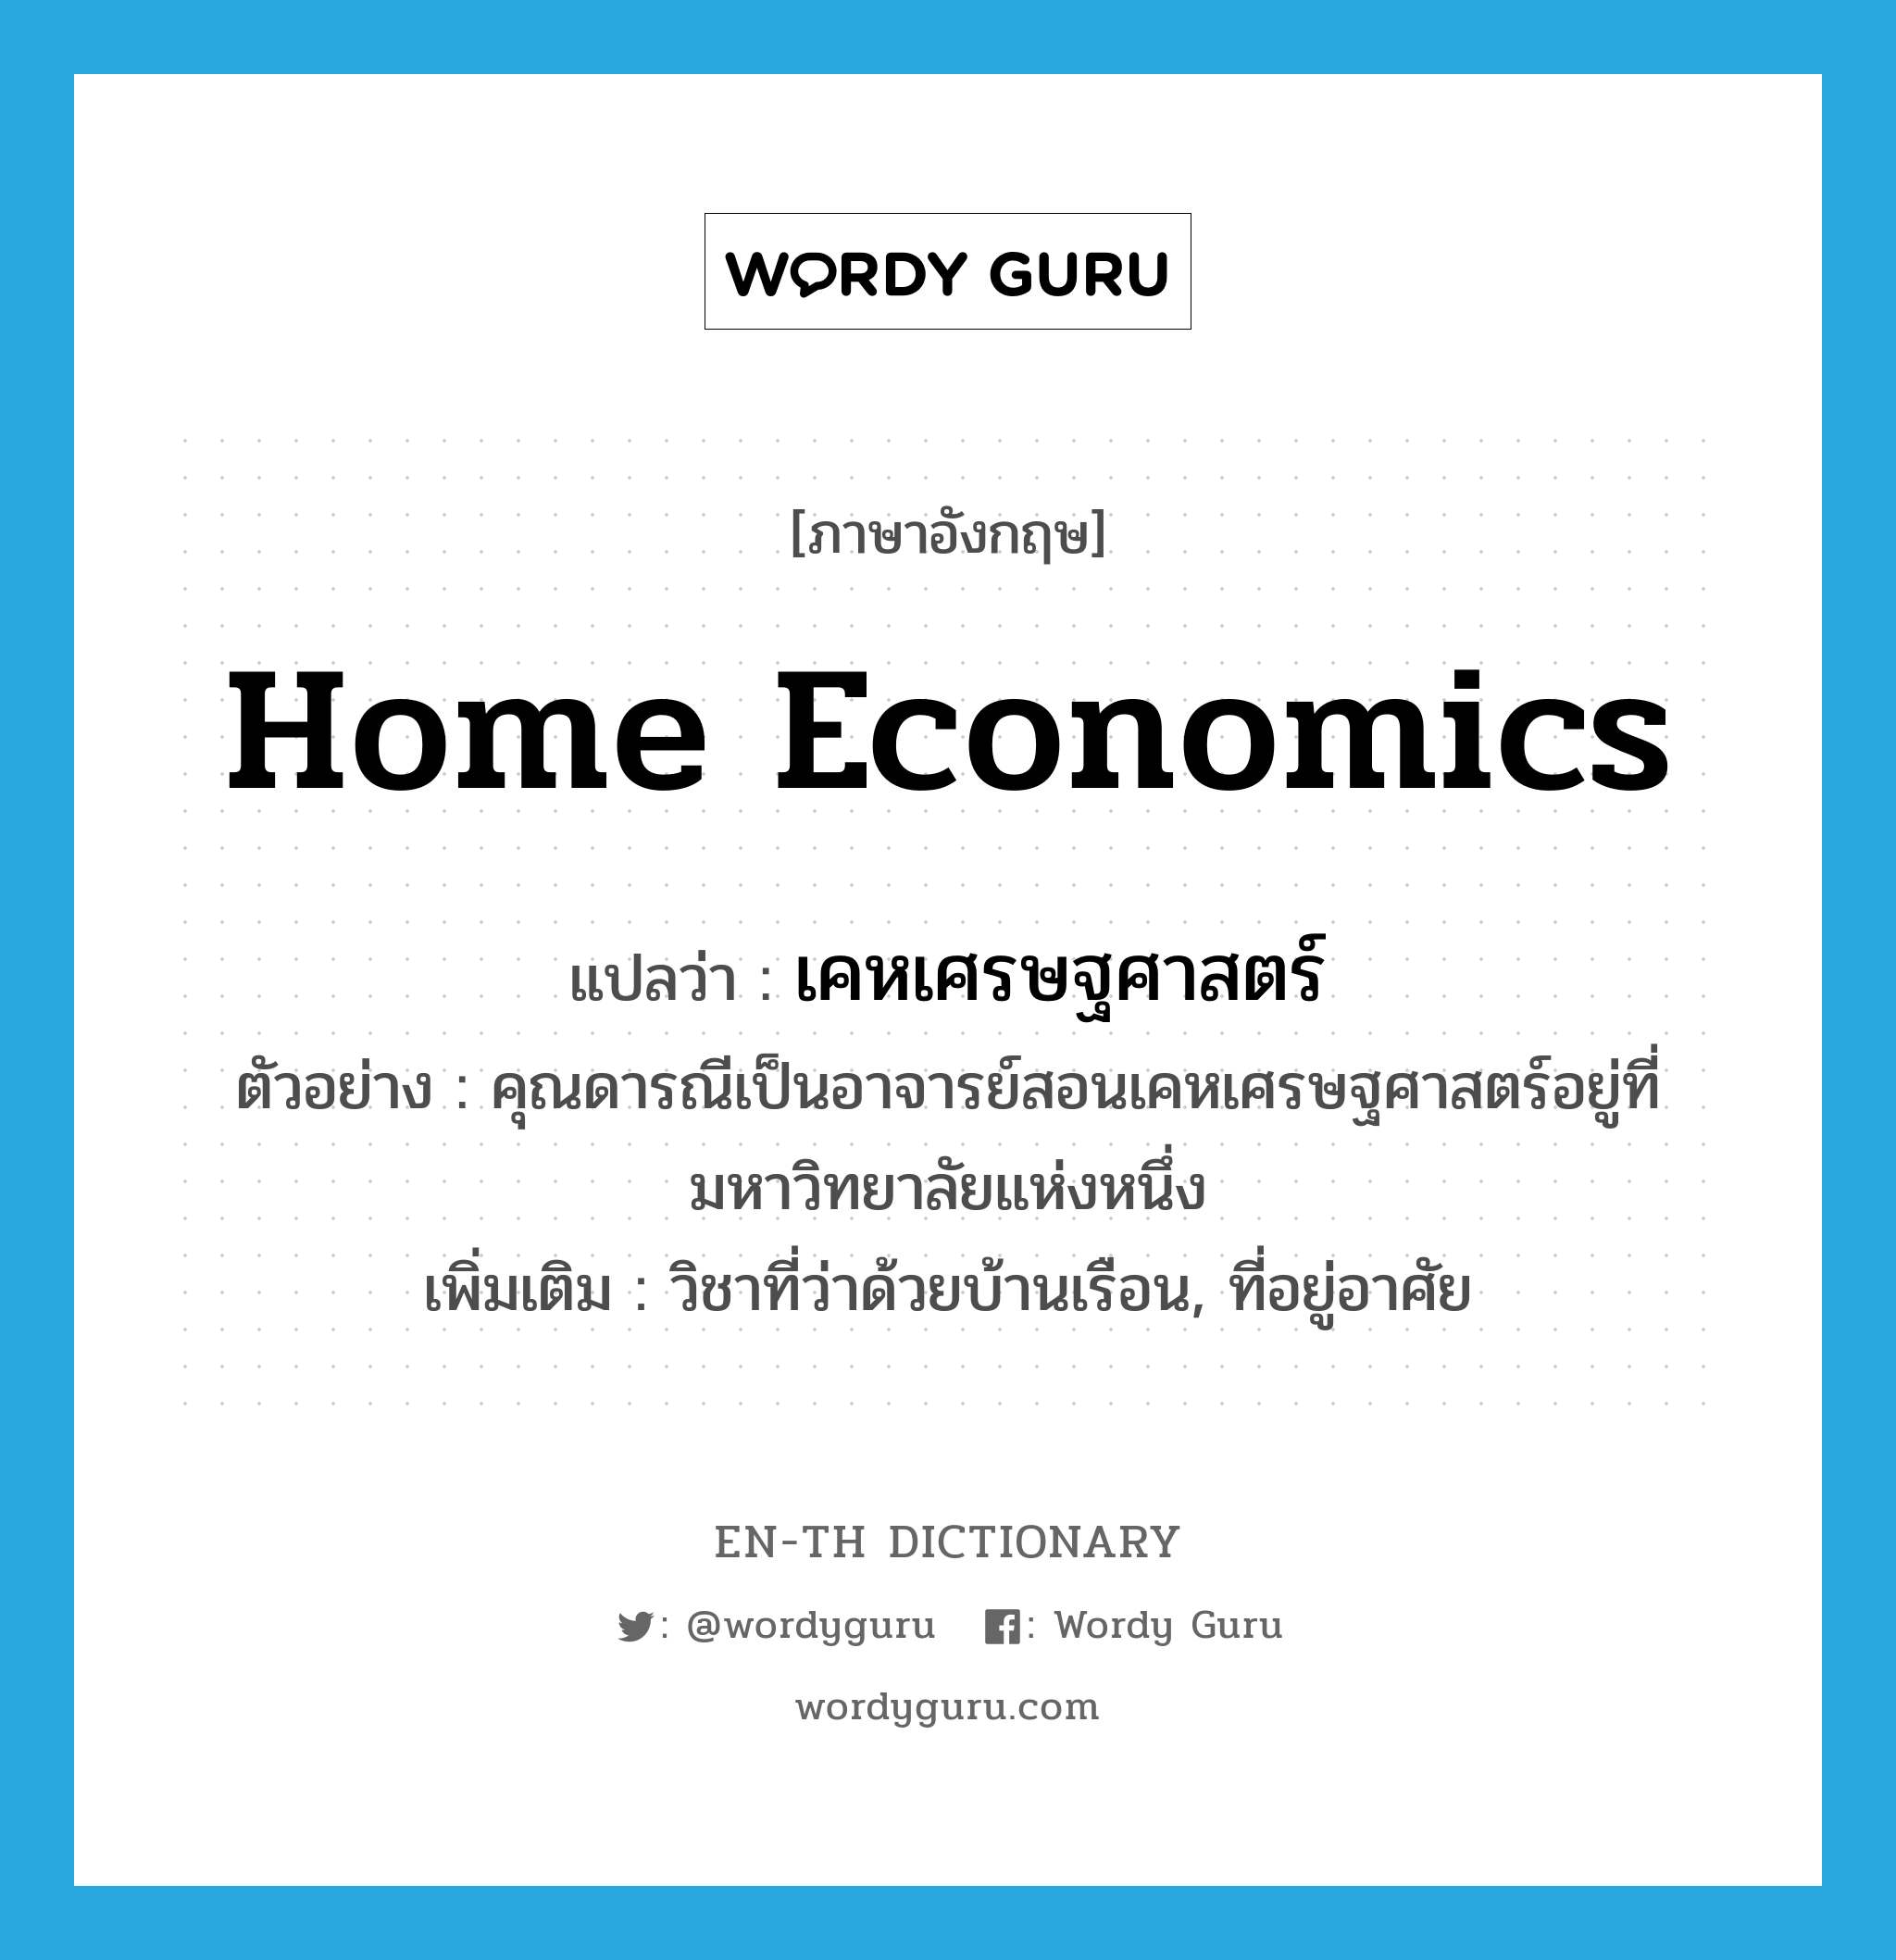 home economics แปลว่า?, คำศัพท์ภาษาอังกฤษ home economics แปลว่า เคหเศรษฐศาสตร์ ประเภท N ตัวอย่าง คุณดารณีเป็นอาจารย์สอนเคหเศรษฐศาสตร์อยู่ที่มหาวิทยาลัยแห่งหนึ่ง เพิ่มเติม วิชาที่ว่าด้วยบ้านเรือน, ที่อยู่อาศัย หมวด N